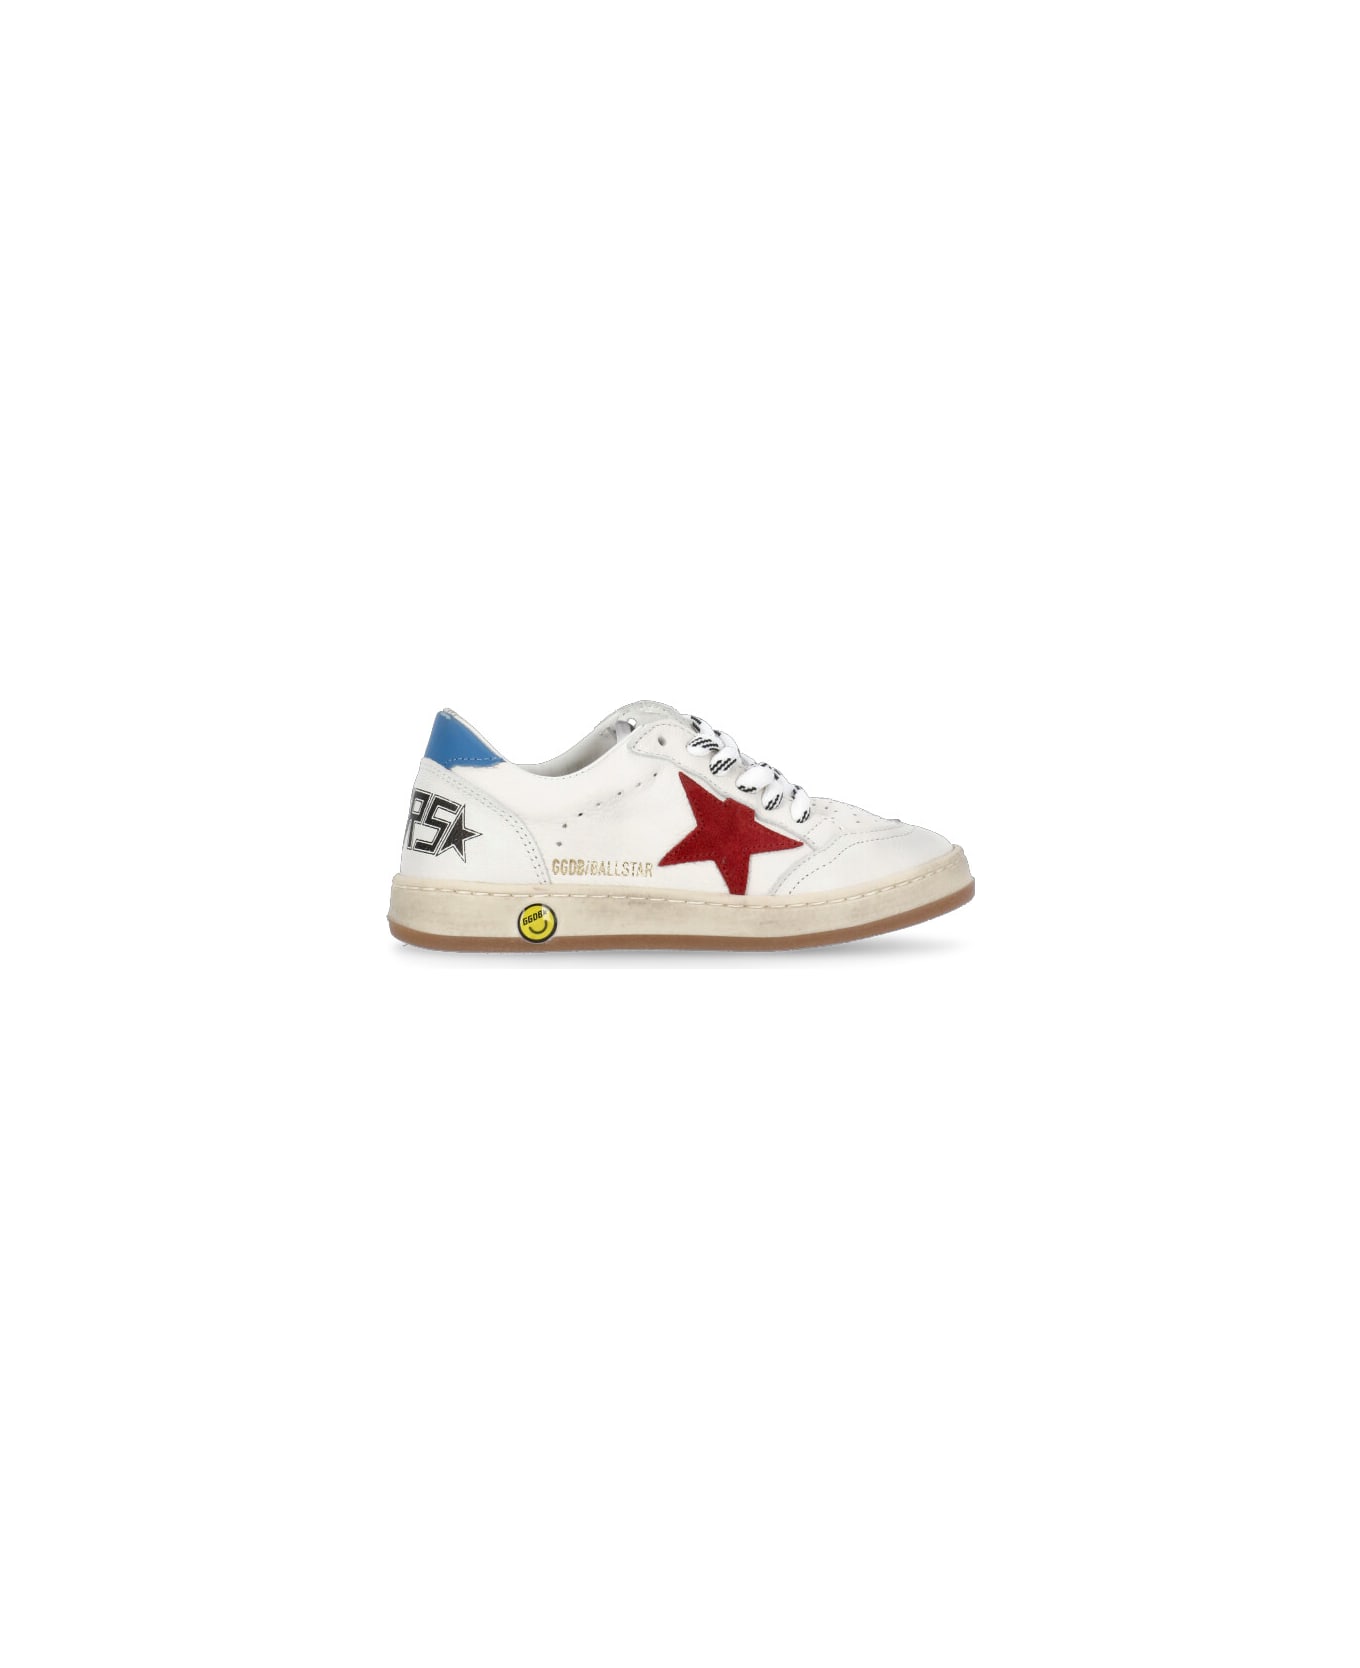 Golden Goose Ball Star Sneakers - White シューズ